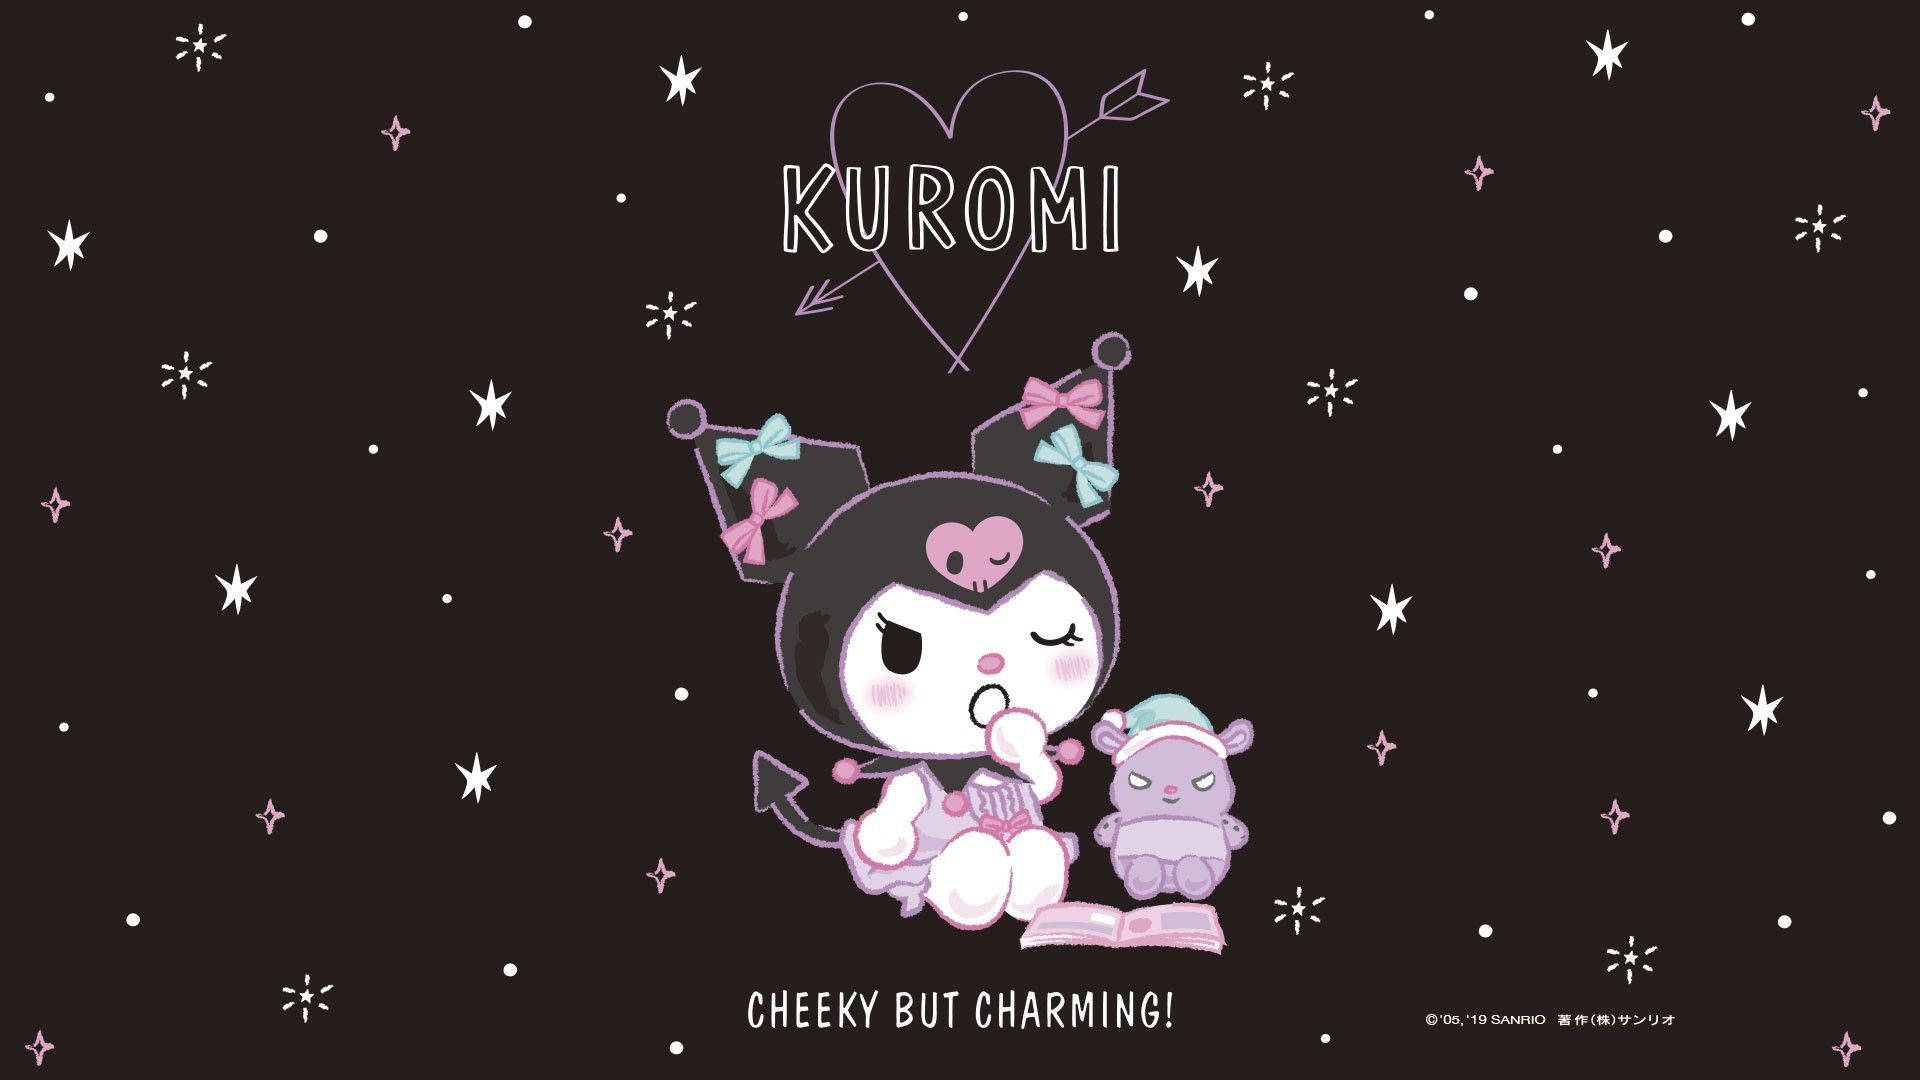 Hình nền Kuromi: Bạn đang tìm kiếm một hình nền độc đáo cho điện thoại của mình? Hãy xem các tác phẩm nghệ thuật về Kuromi của chúng tôi! Bạn sẽ không khỏi thích thú trước sự độc đáo và sáng tạo của chúng.